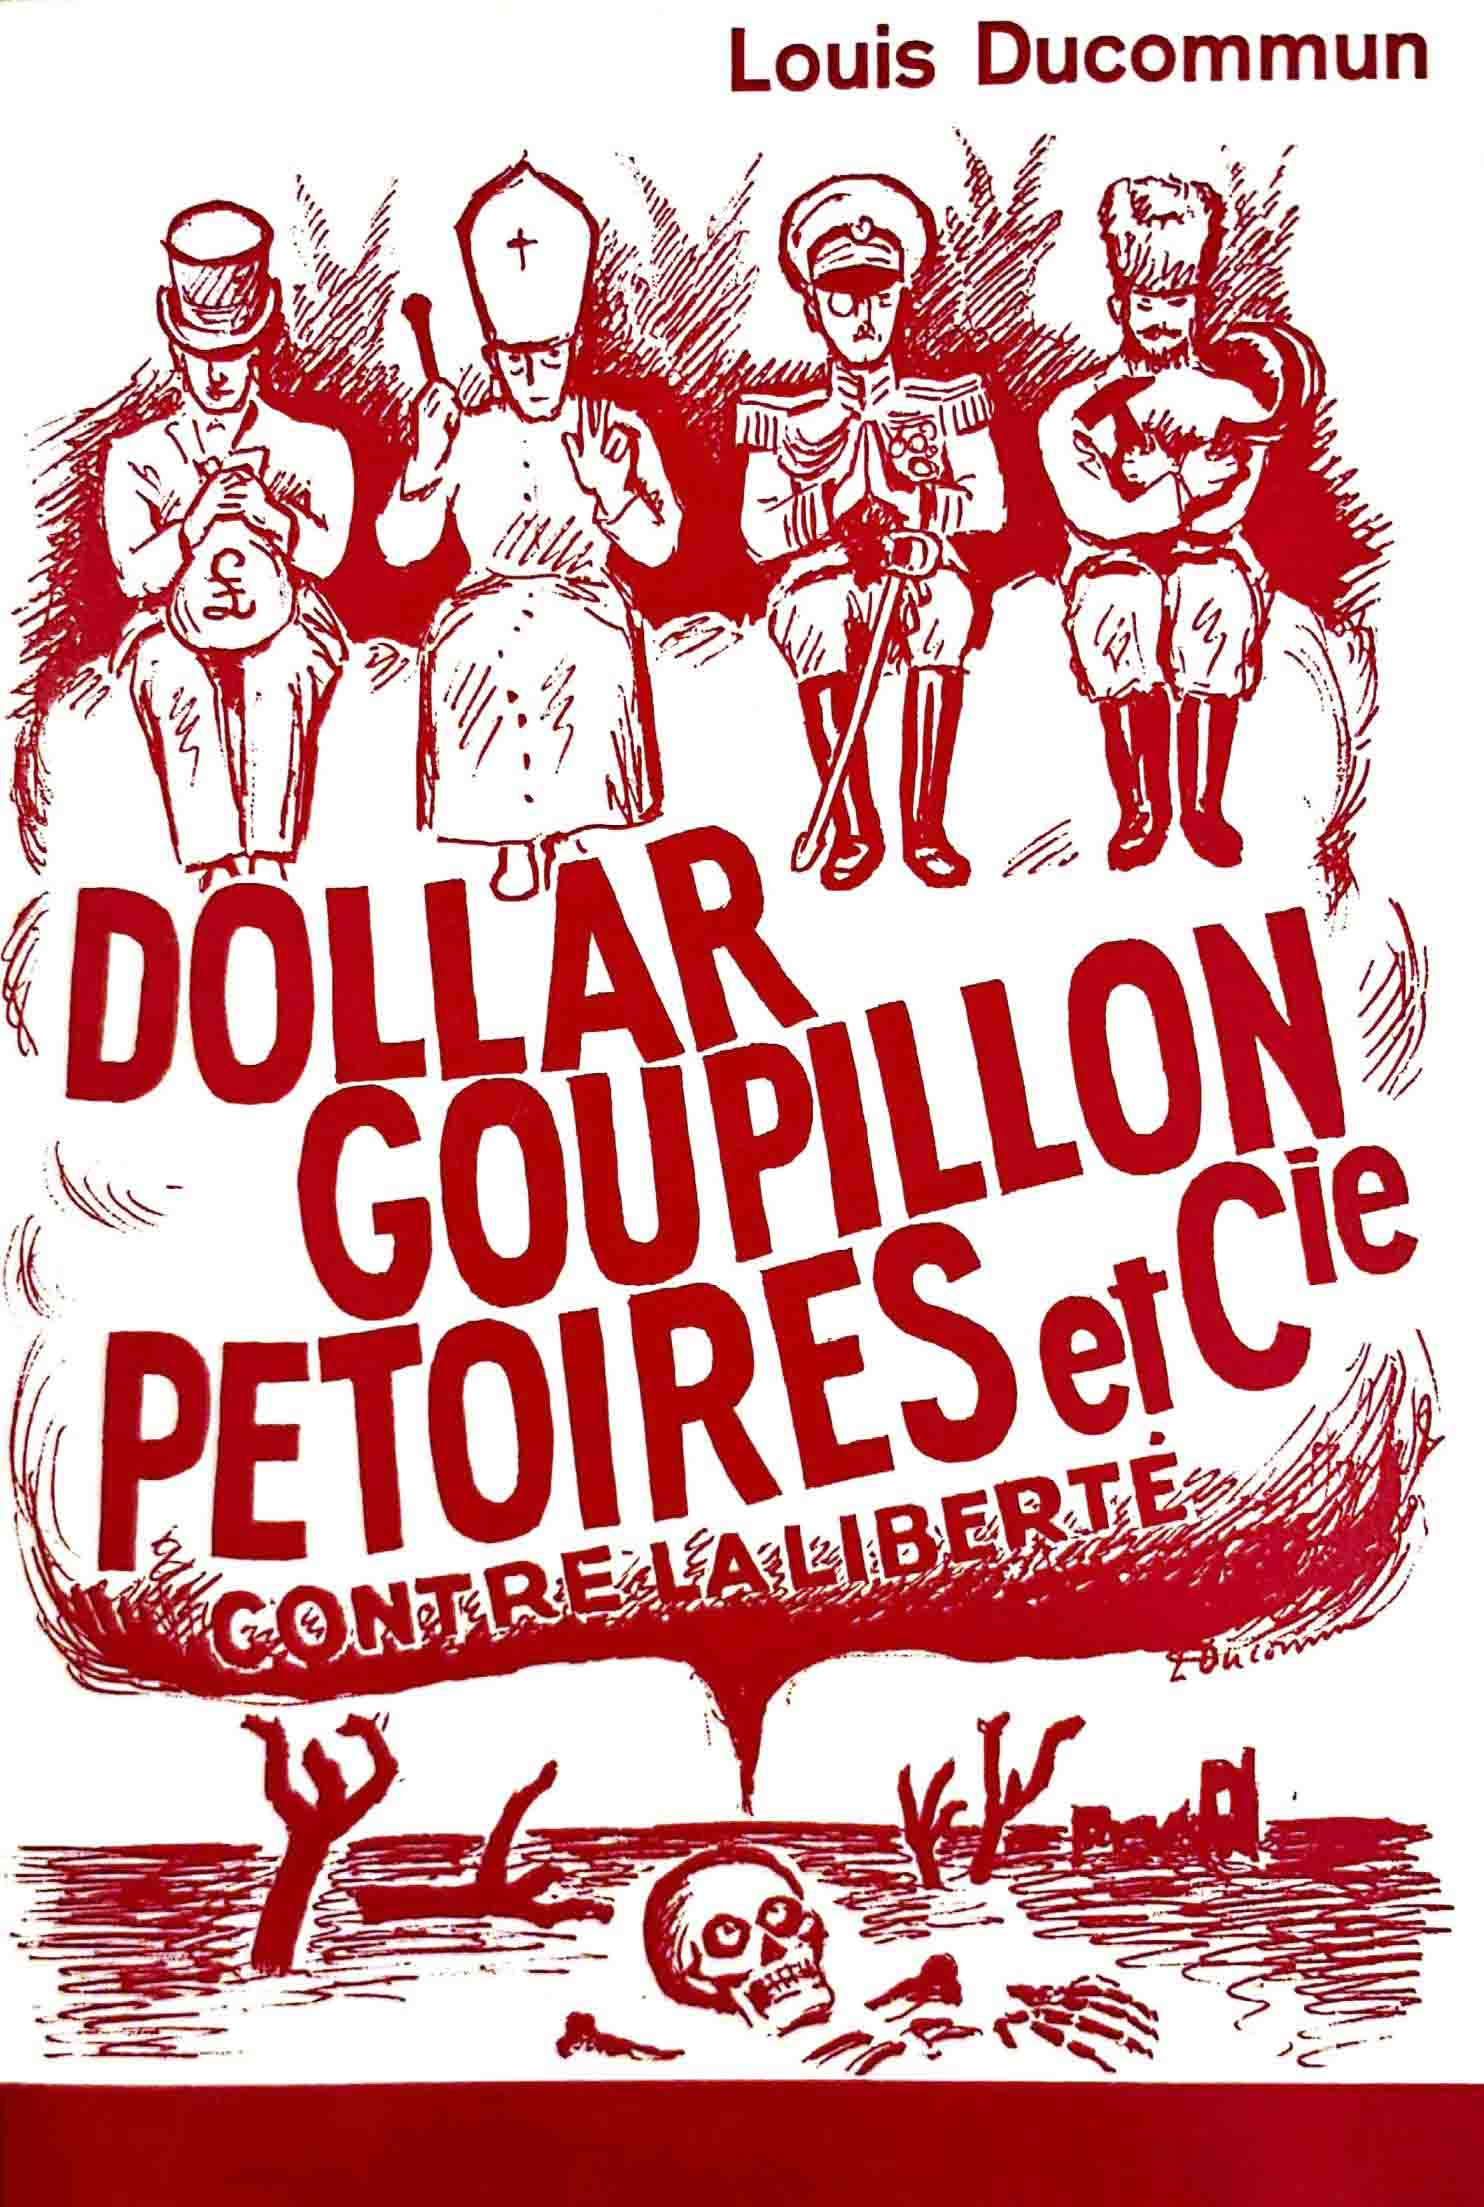 DUCOMMUN, LOUIS: - Dollar, Goupillon, Ptoires et Cie contre la libert.